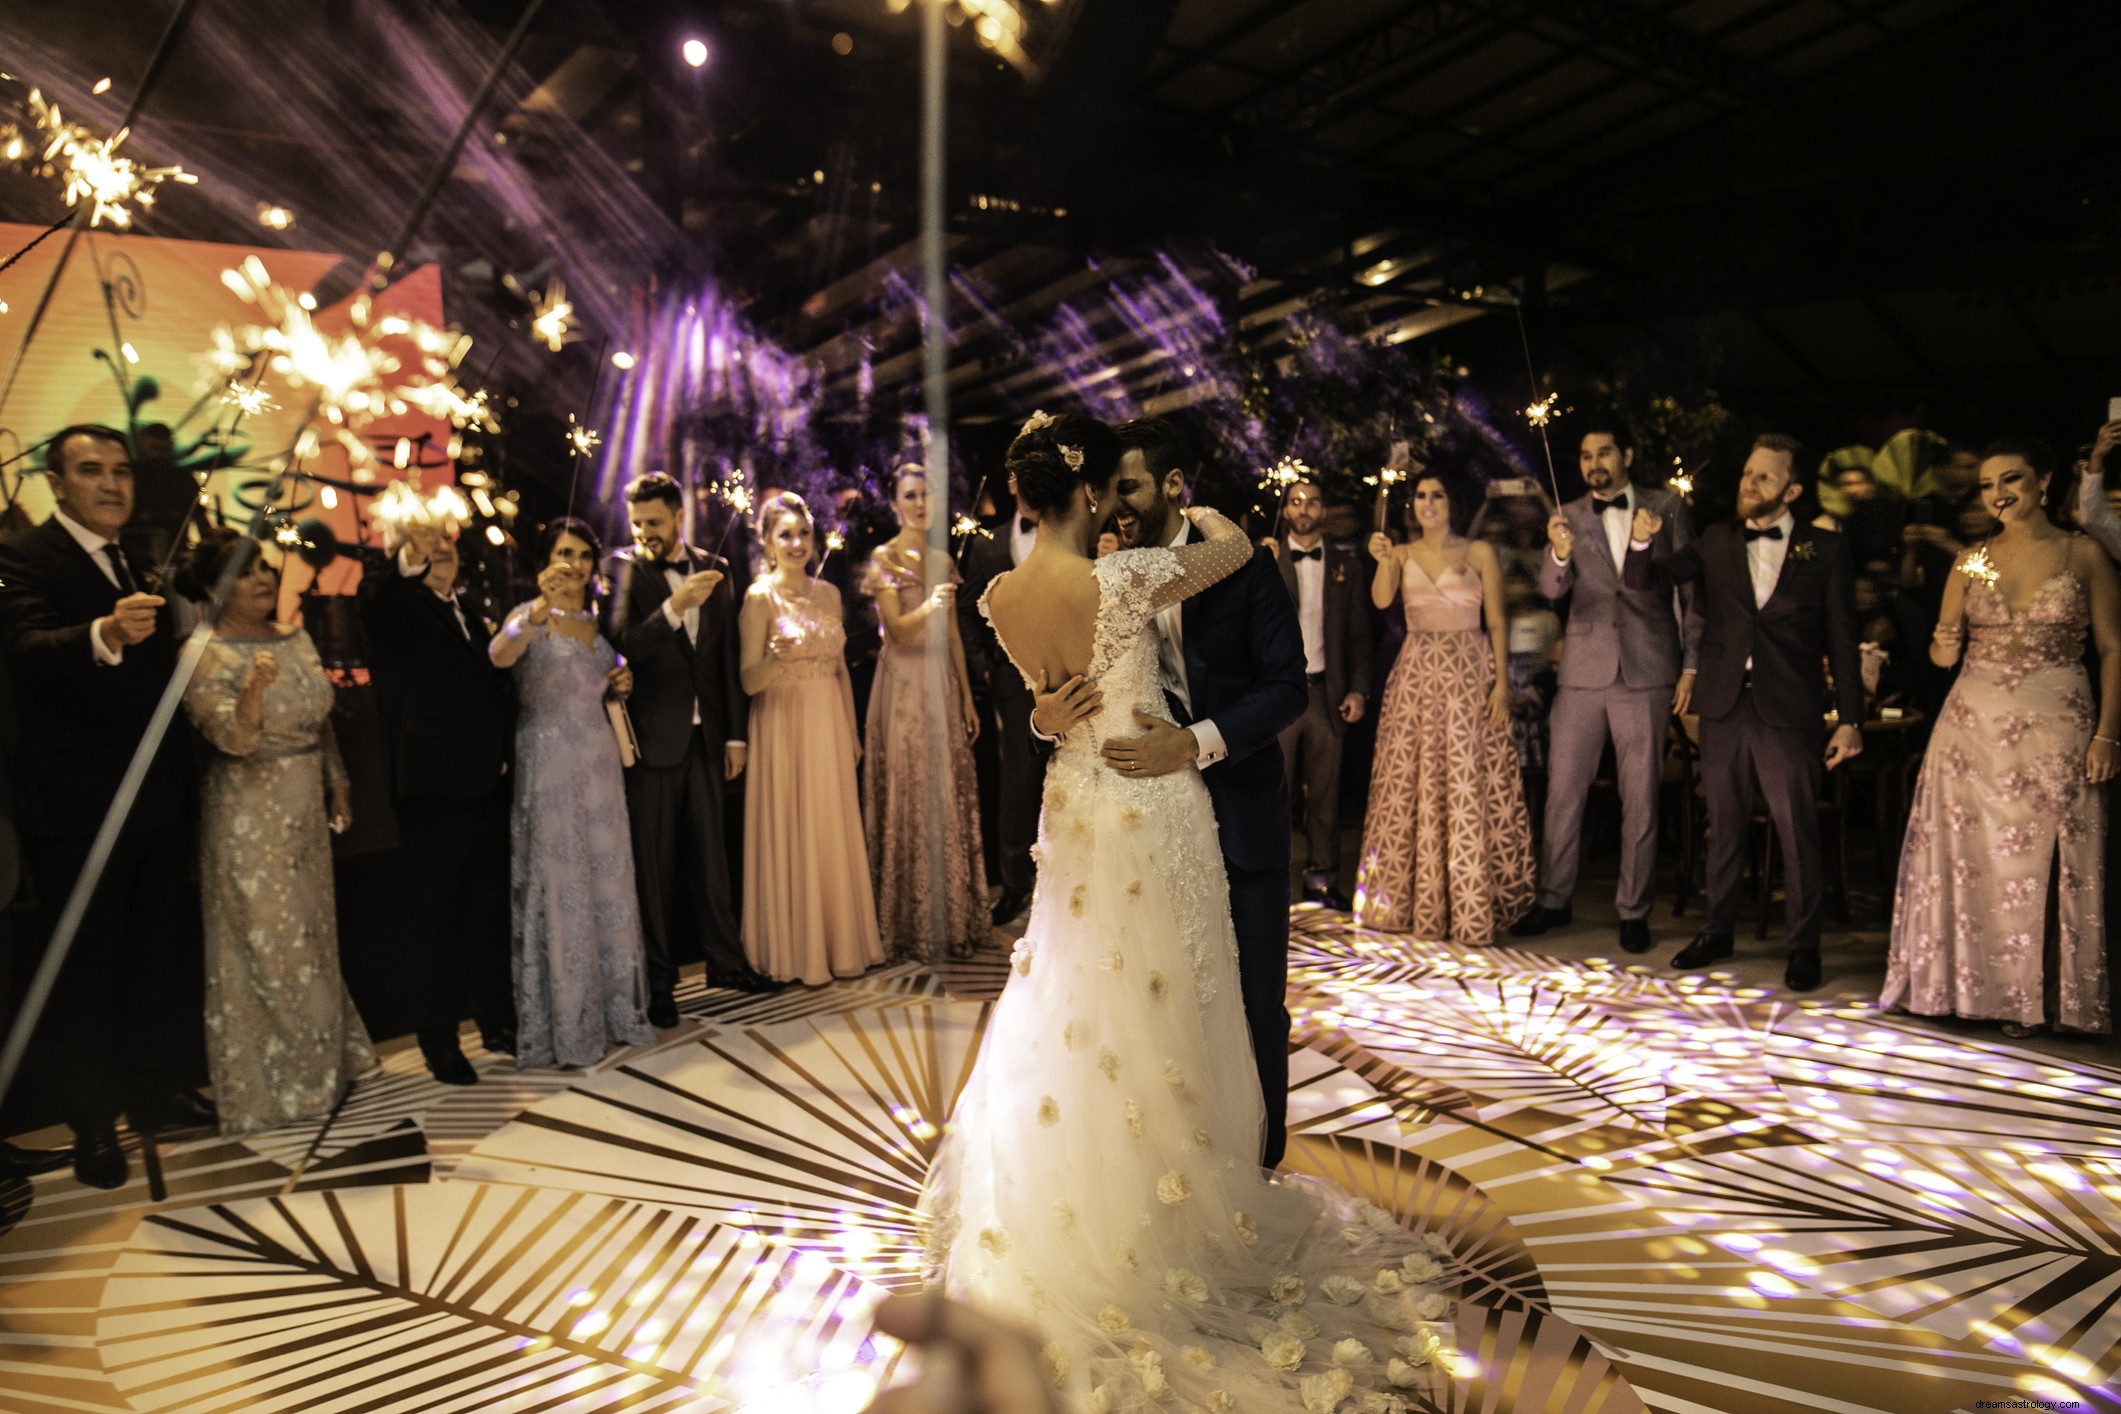 5 καλύτερα θέματα γάμου που μπορεί να θέλει να επιλέξει μια νύφη Σκορπιού 